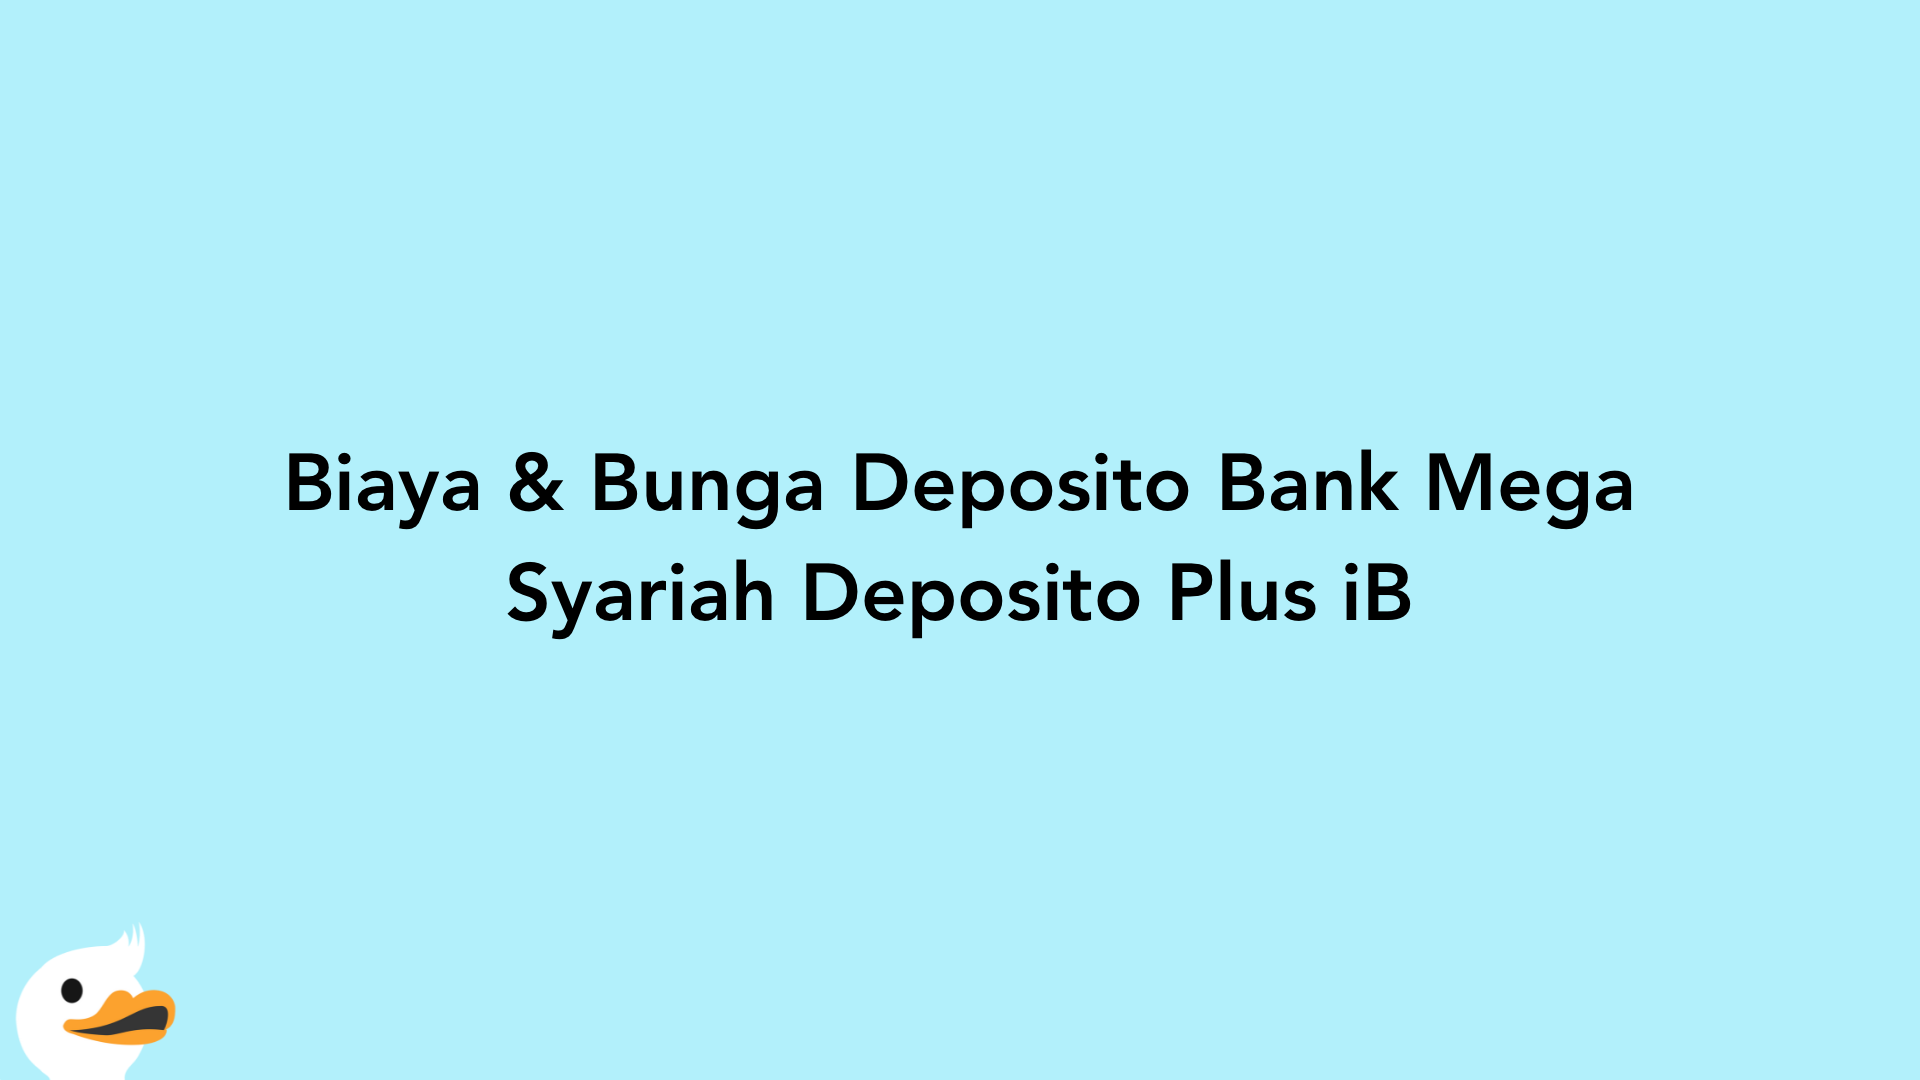 Biaya & Bunga Deposito Bank Mega Syariah Deposito Plus iB